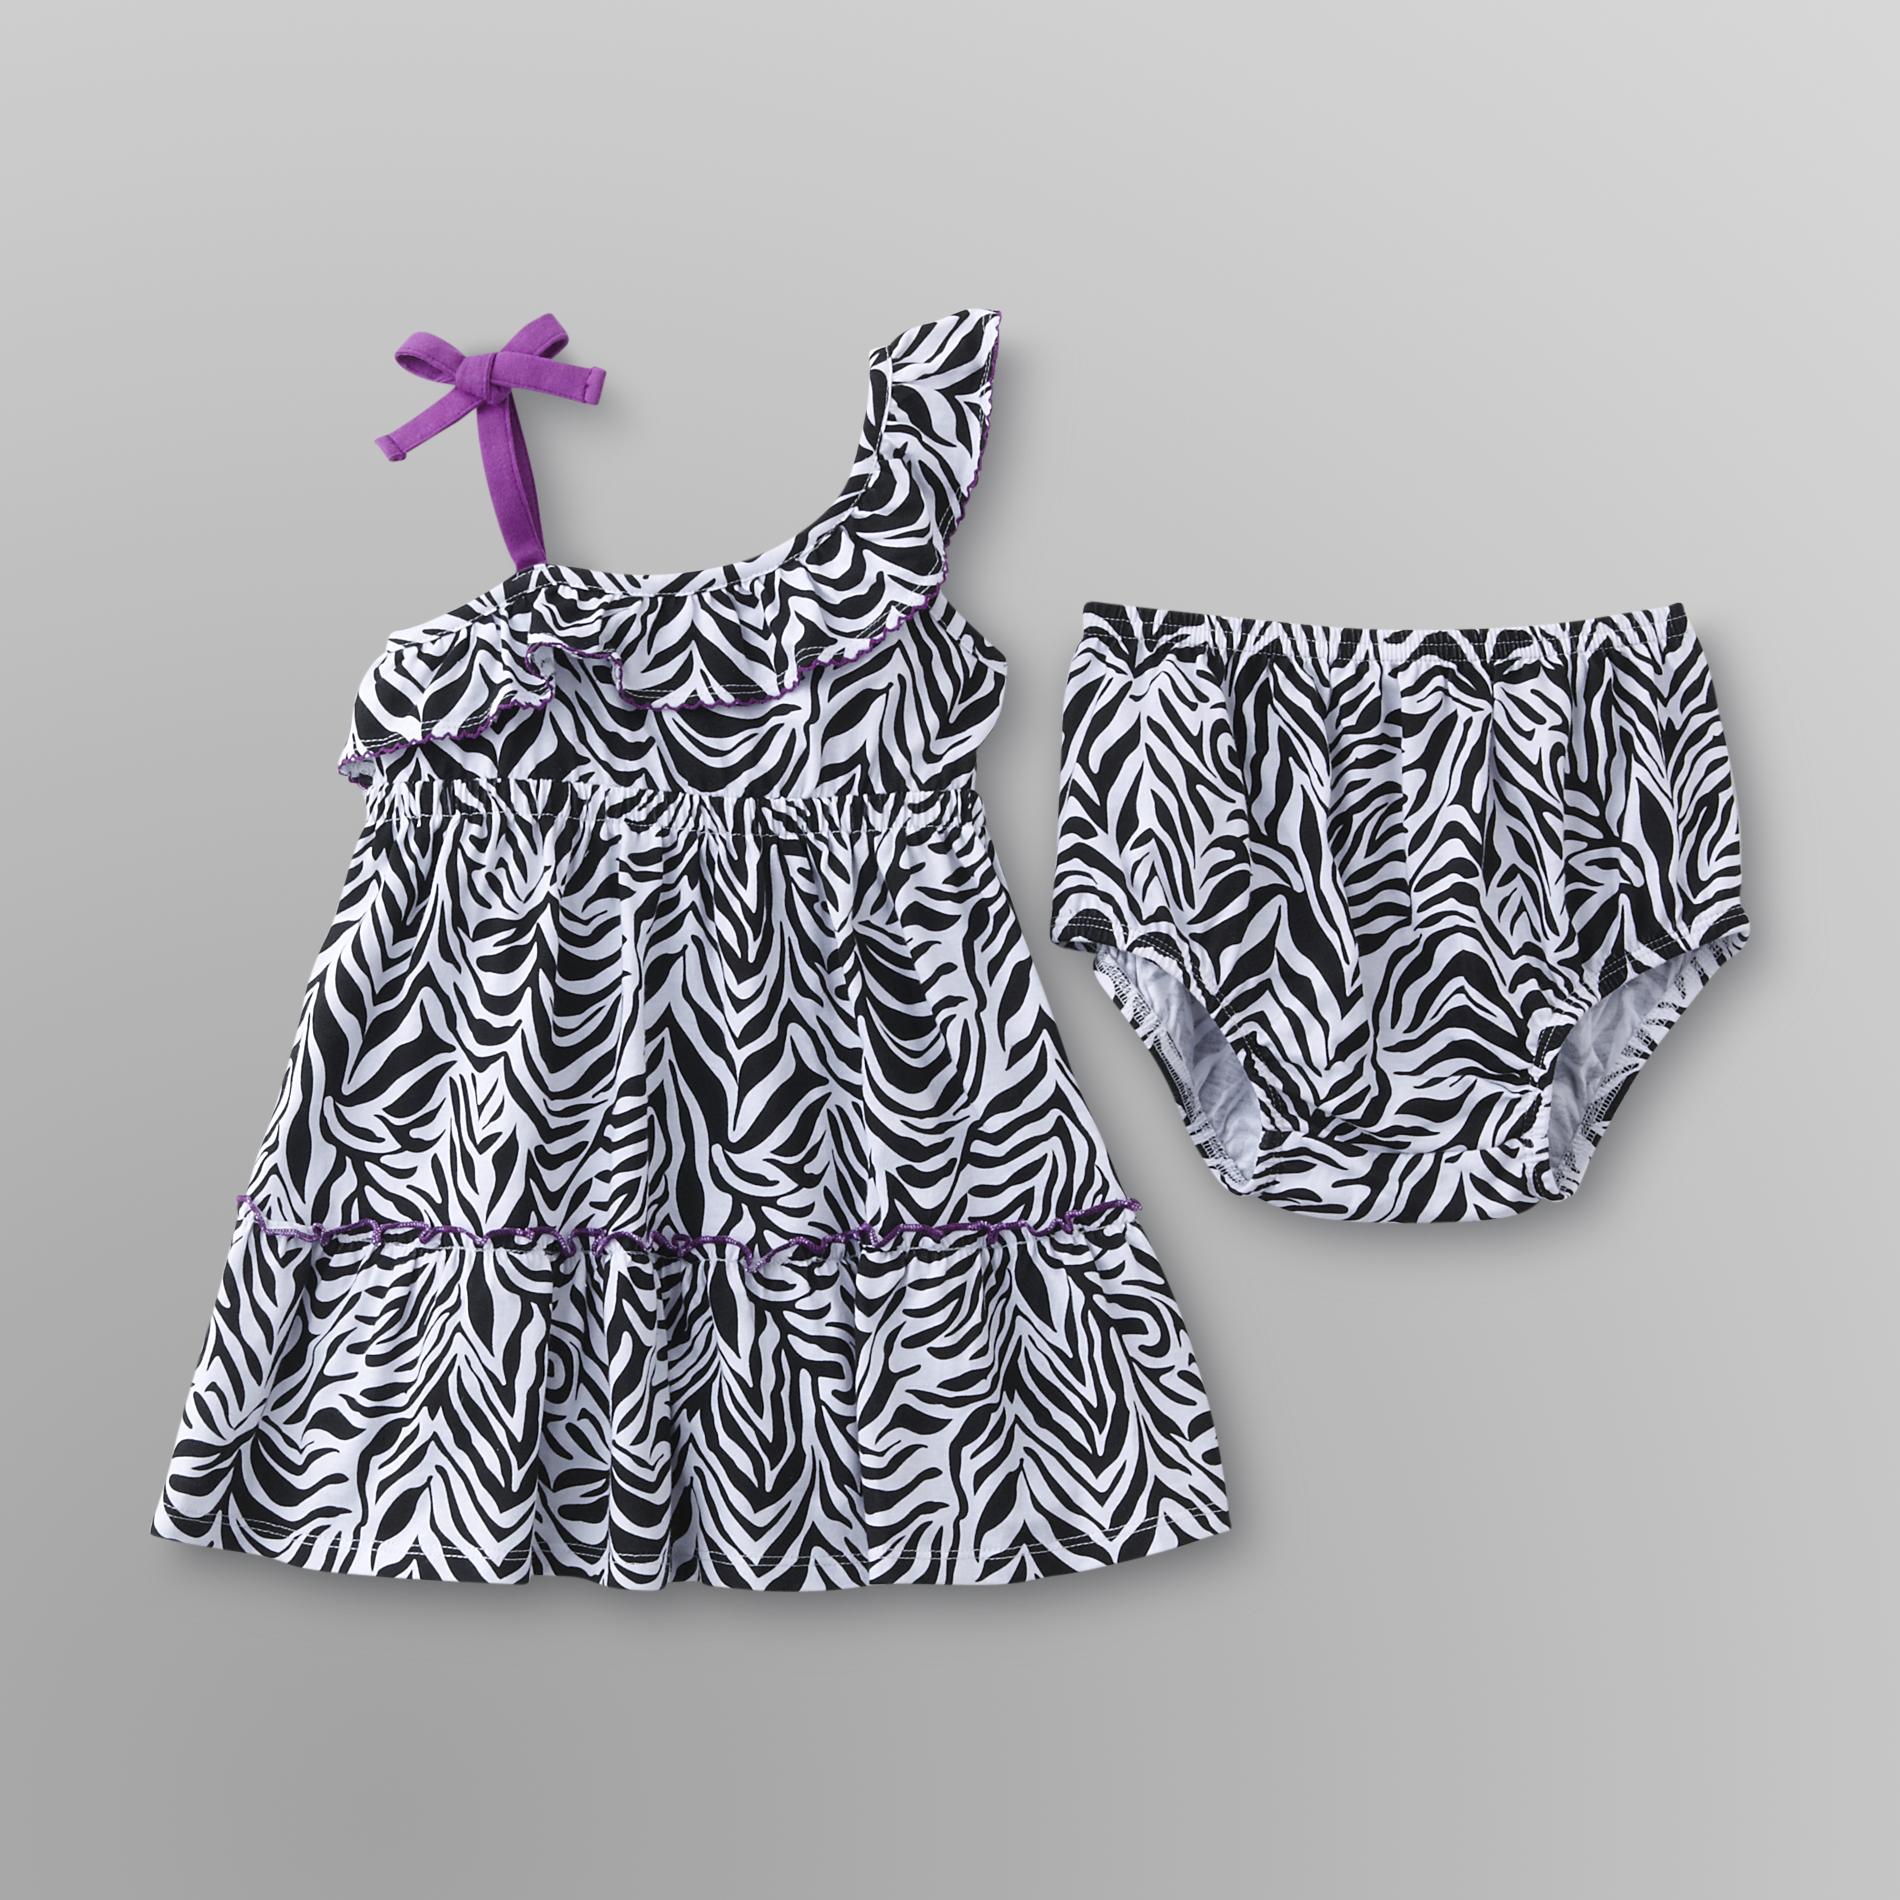 WonderKids Infant & Toddler Girl's Dress - Zebra Print